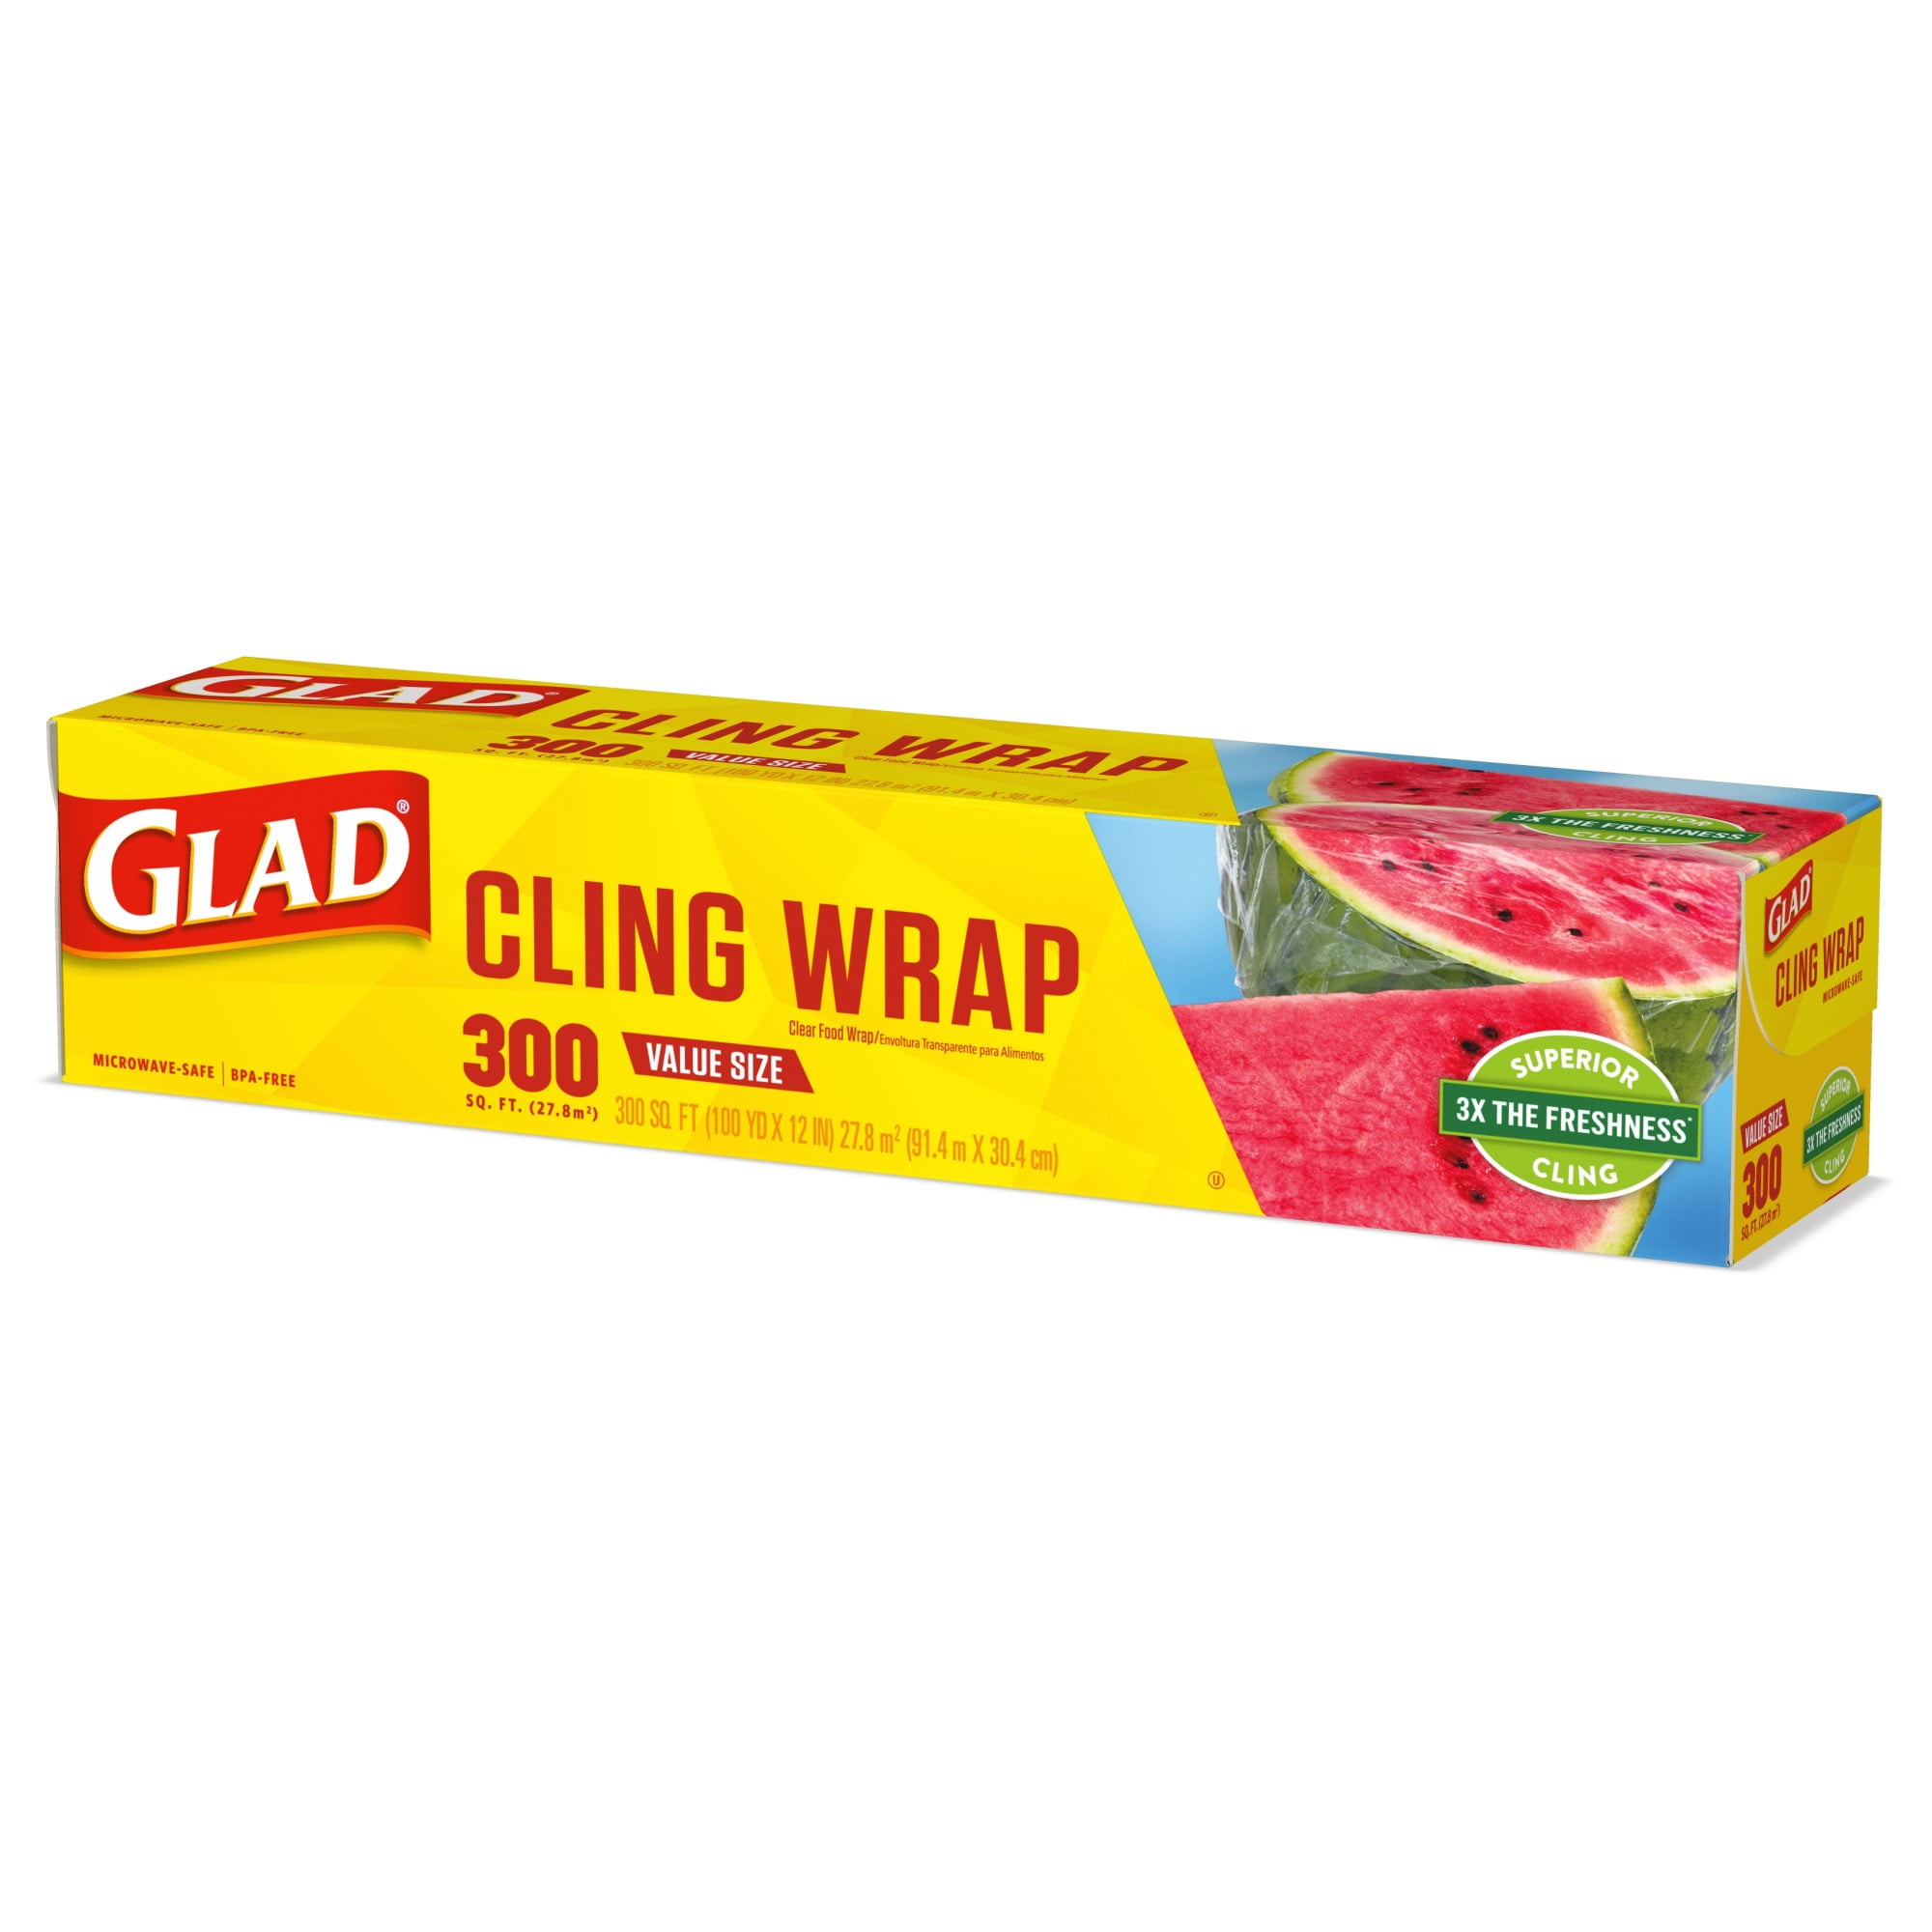 Glad ClingWrap Plastic Food Wrap, 300 